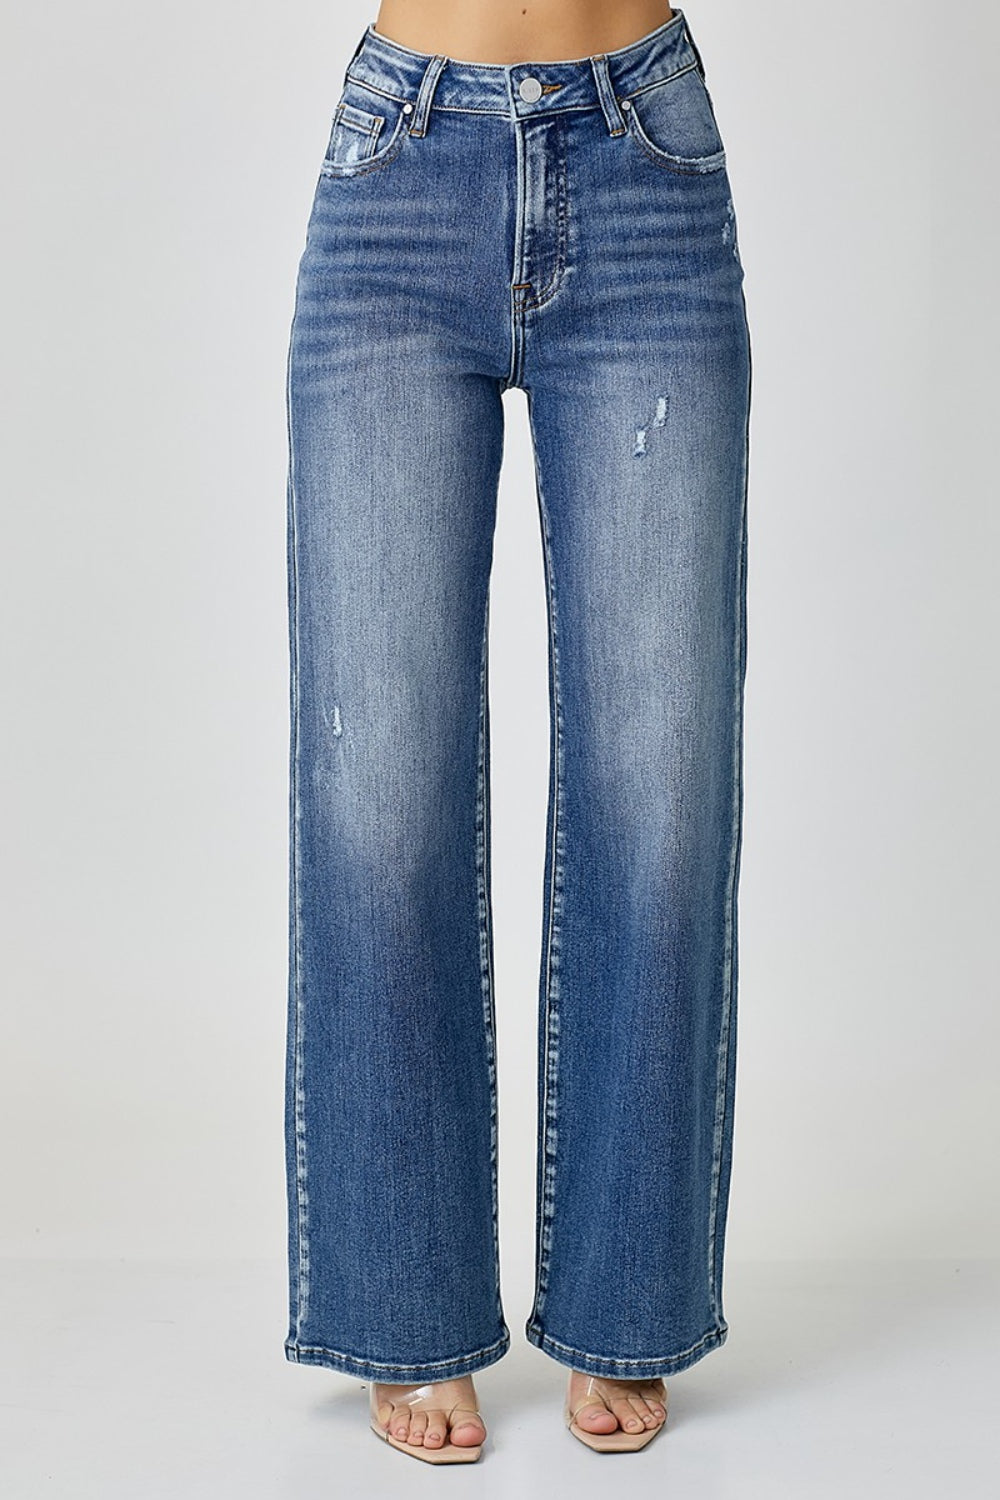 RISEN High Waist Wide Leg Jeans Trendsi